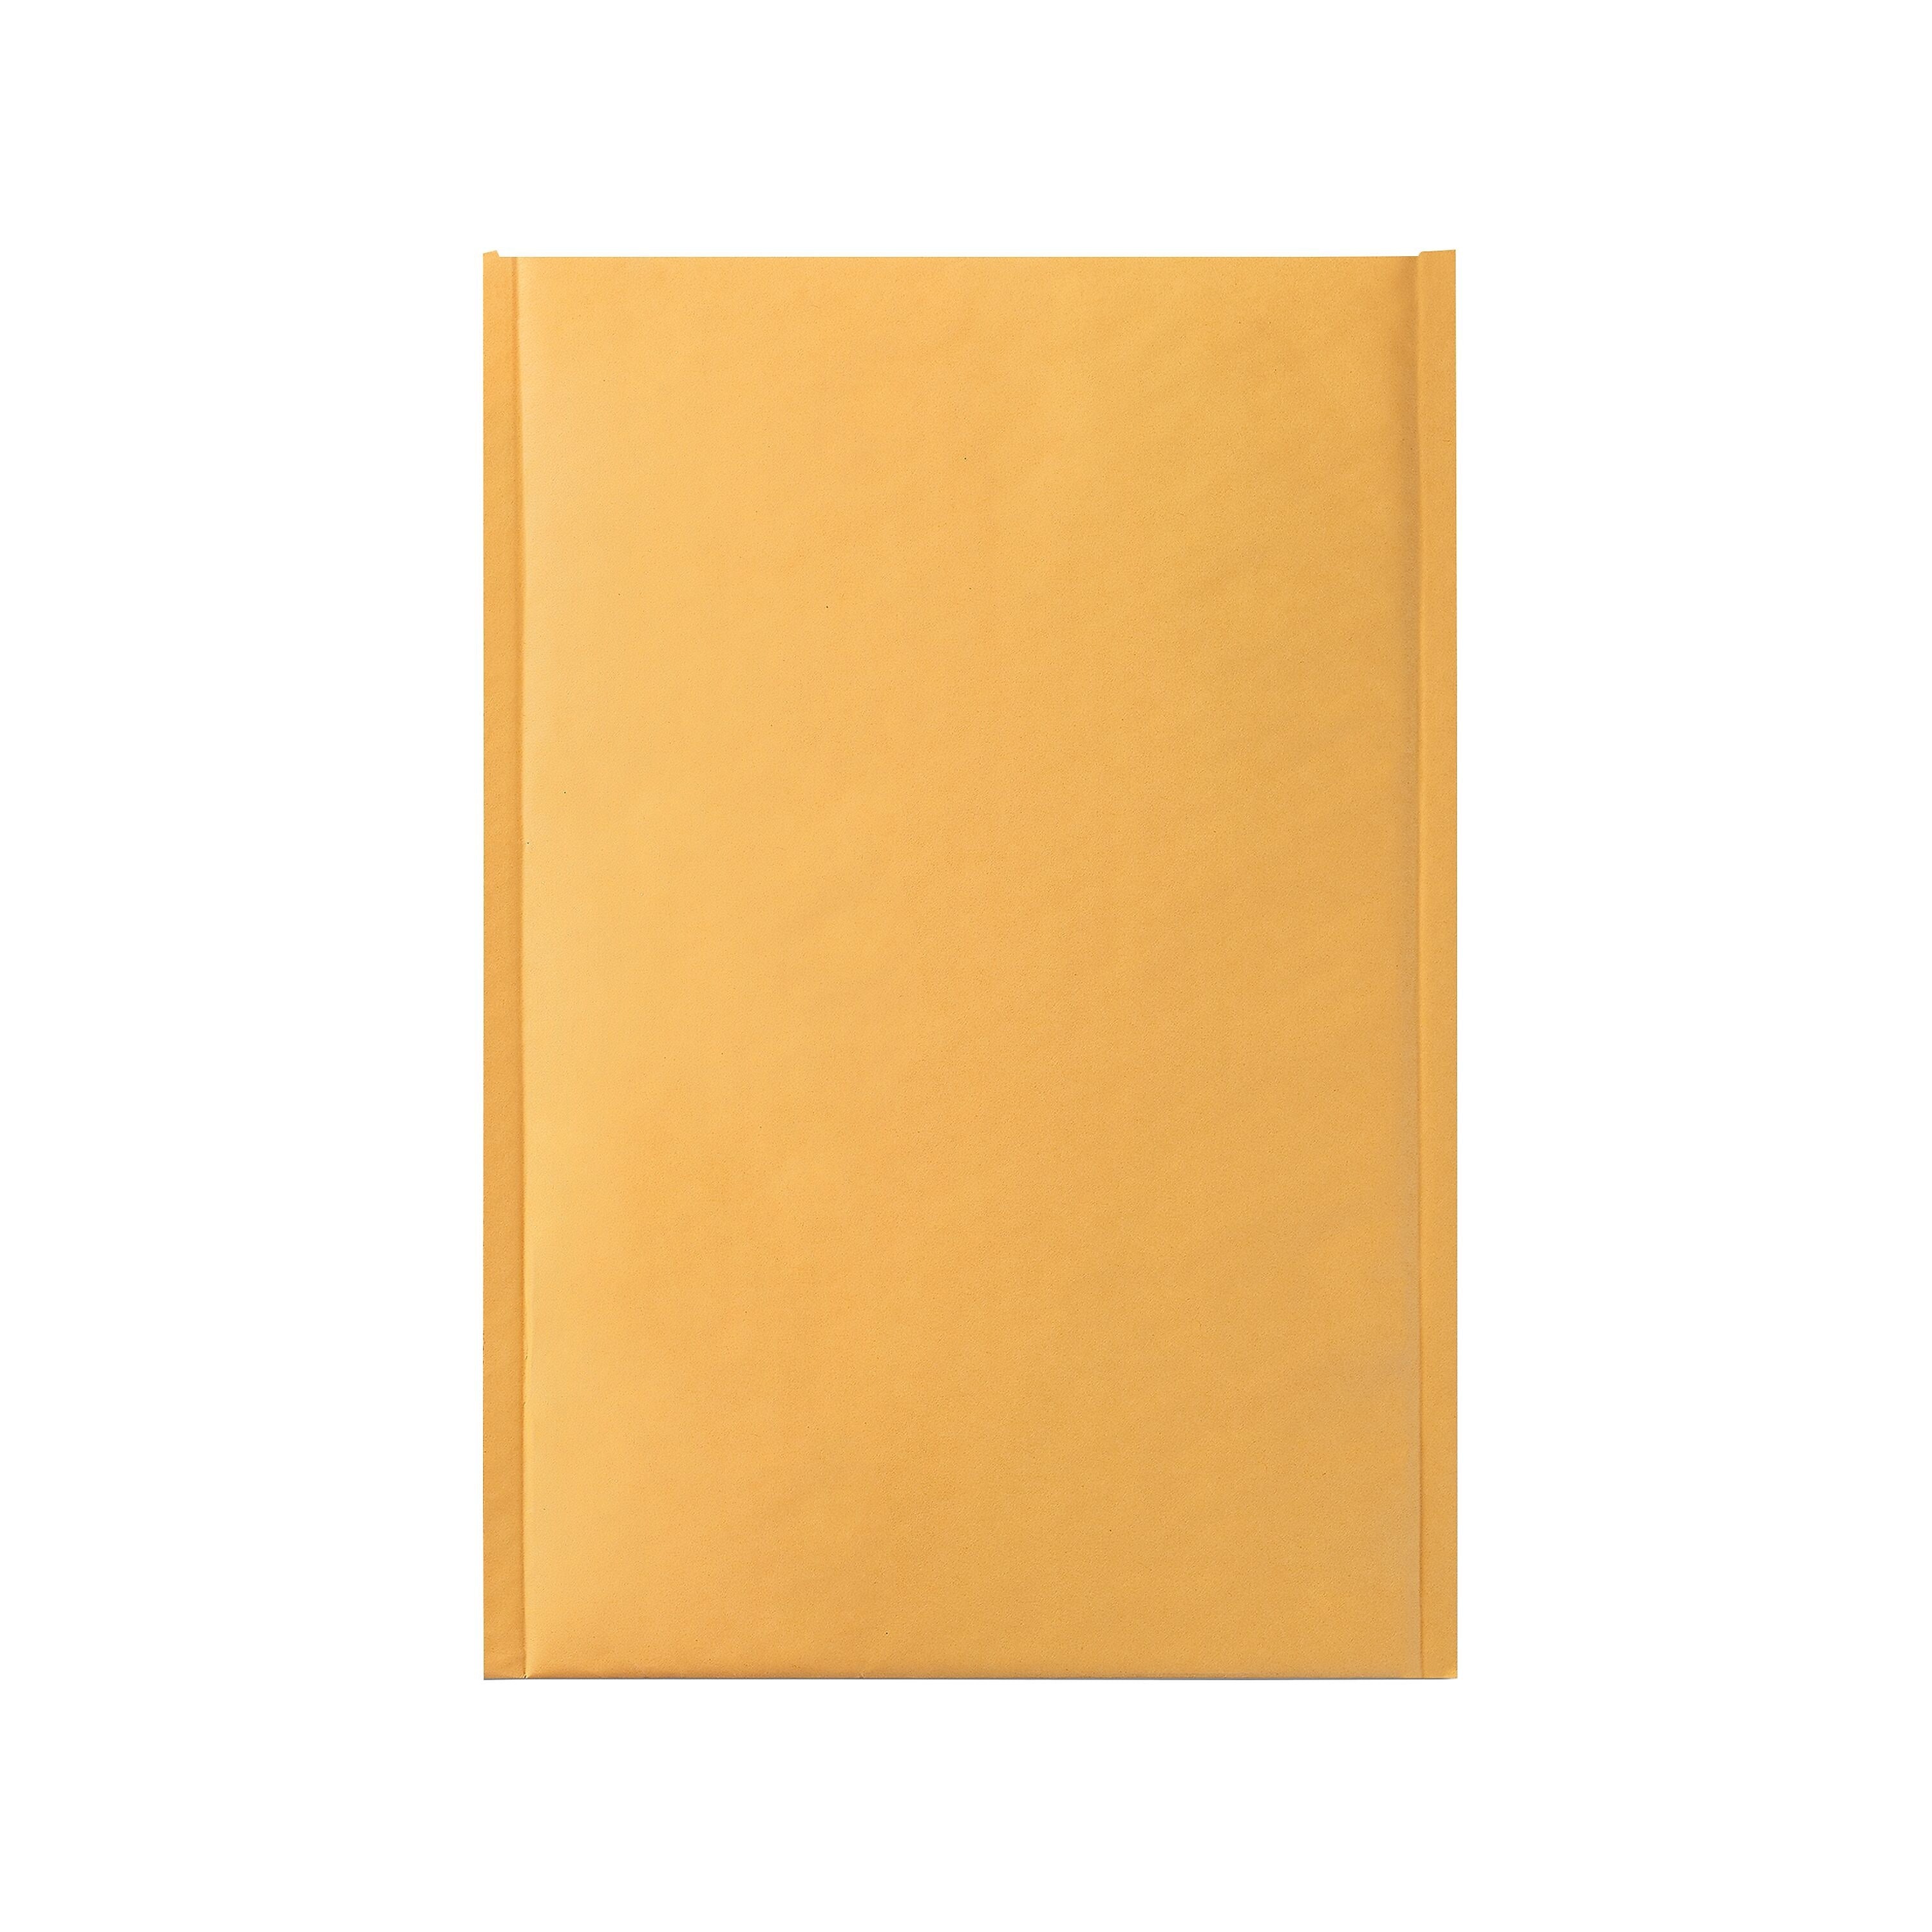 6.75" x 9" Self-Seal Bubble Mailer, #0, 25/Carton